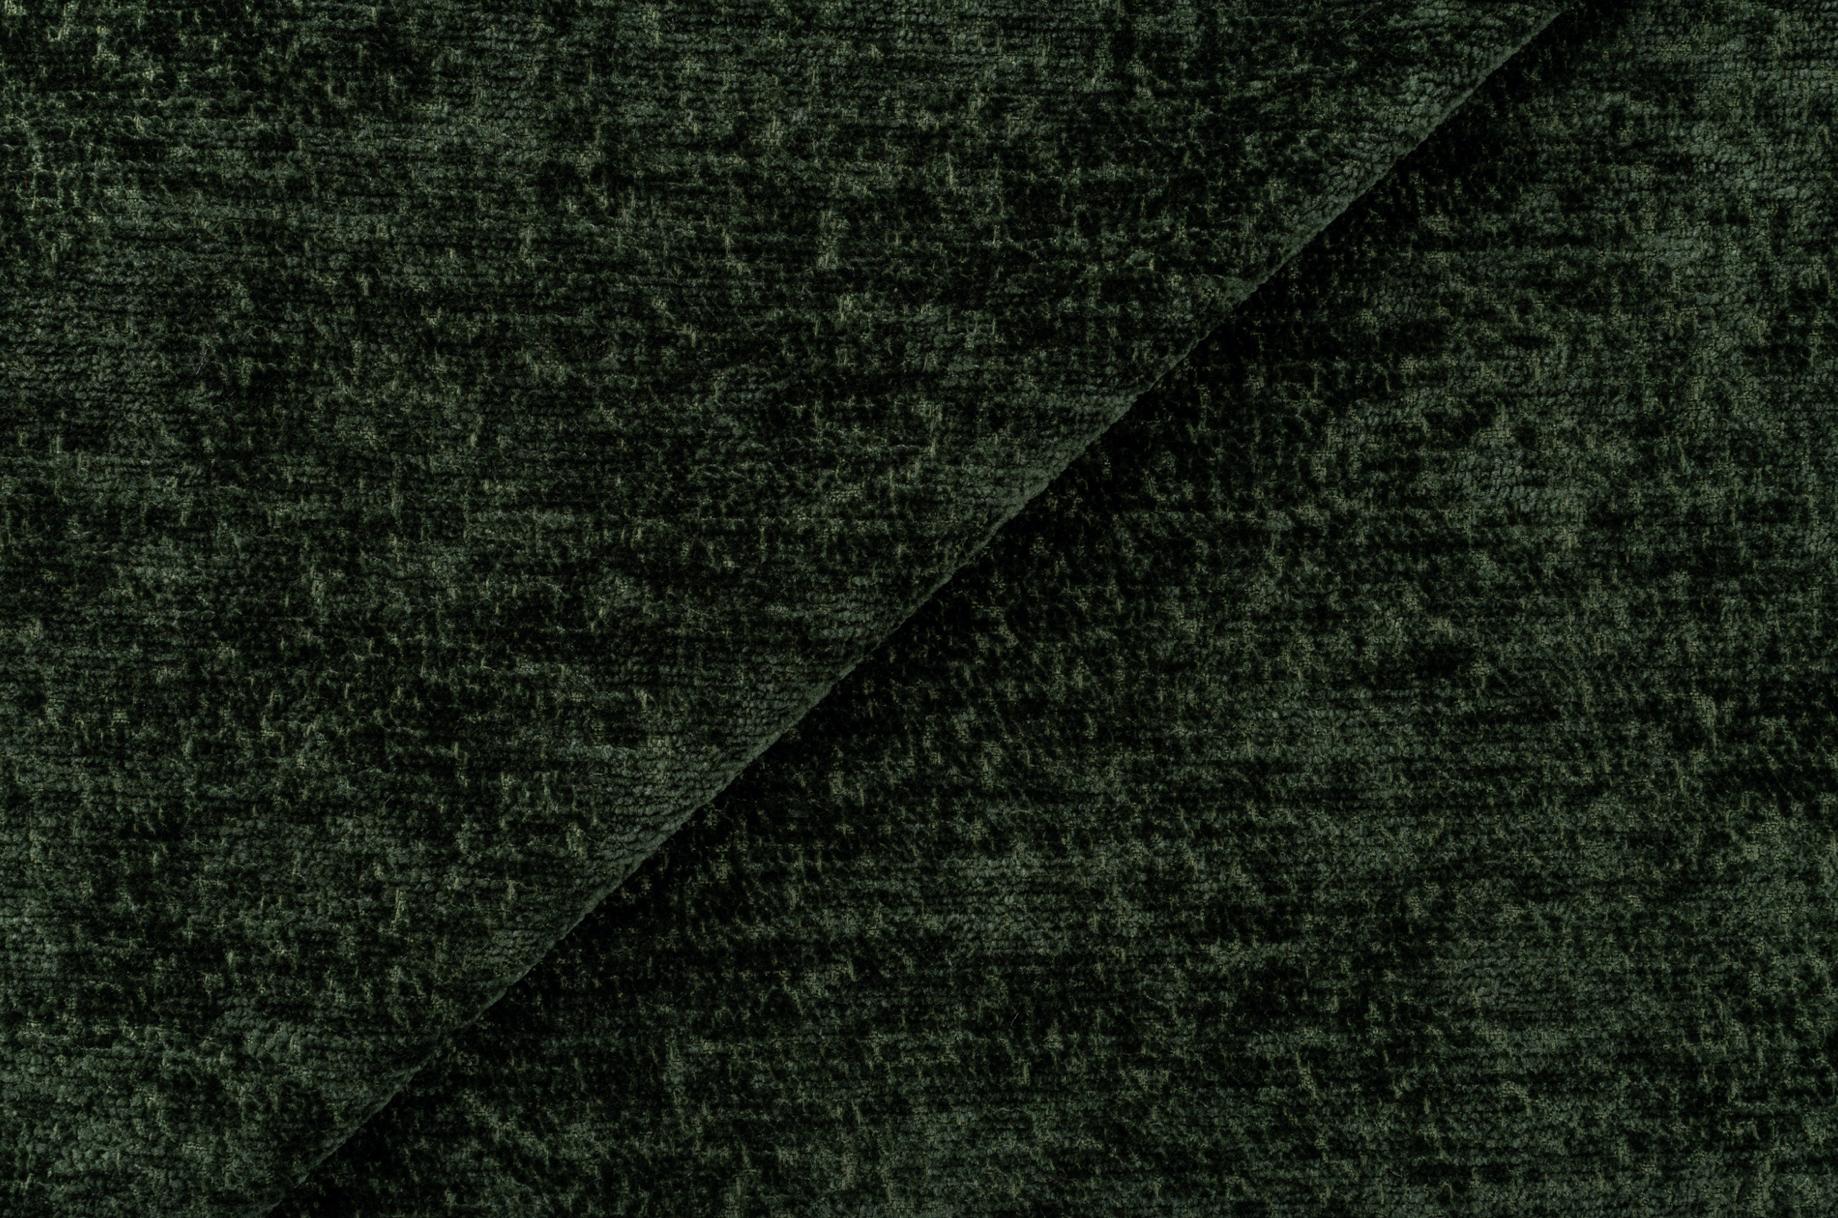 Mid Century James Mont Bent Beech King Cole Armchair, Dark Green Velvet, 1960s For Sale 8